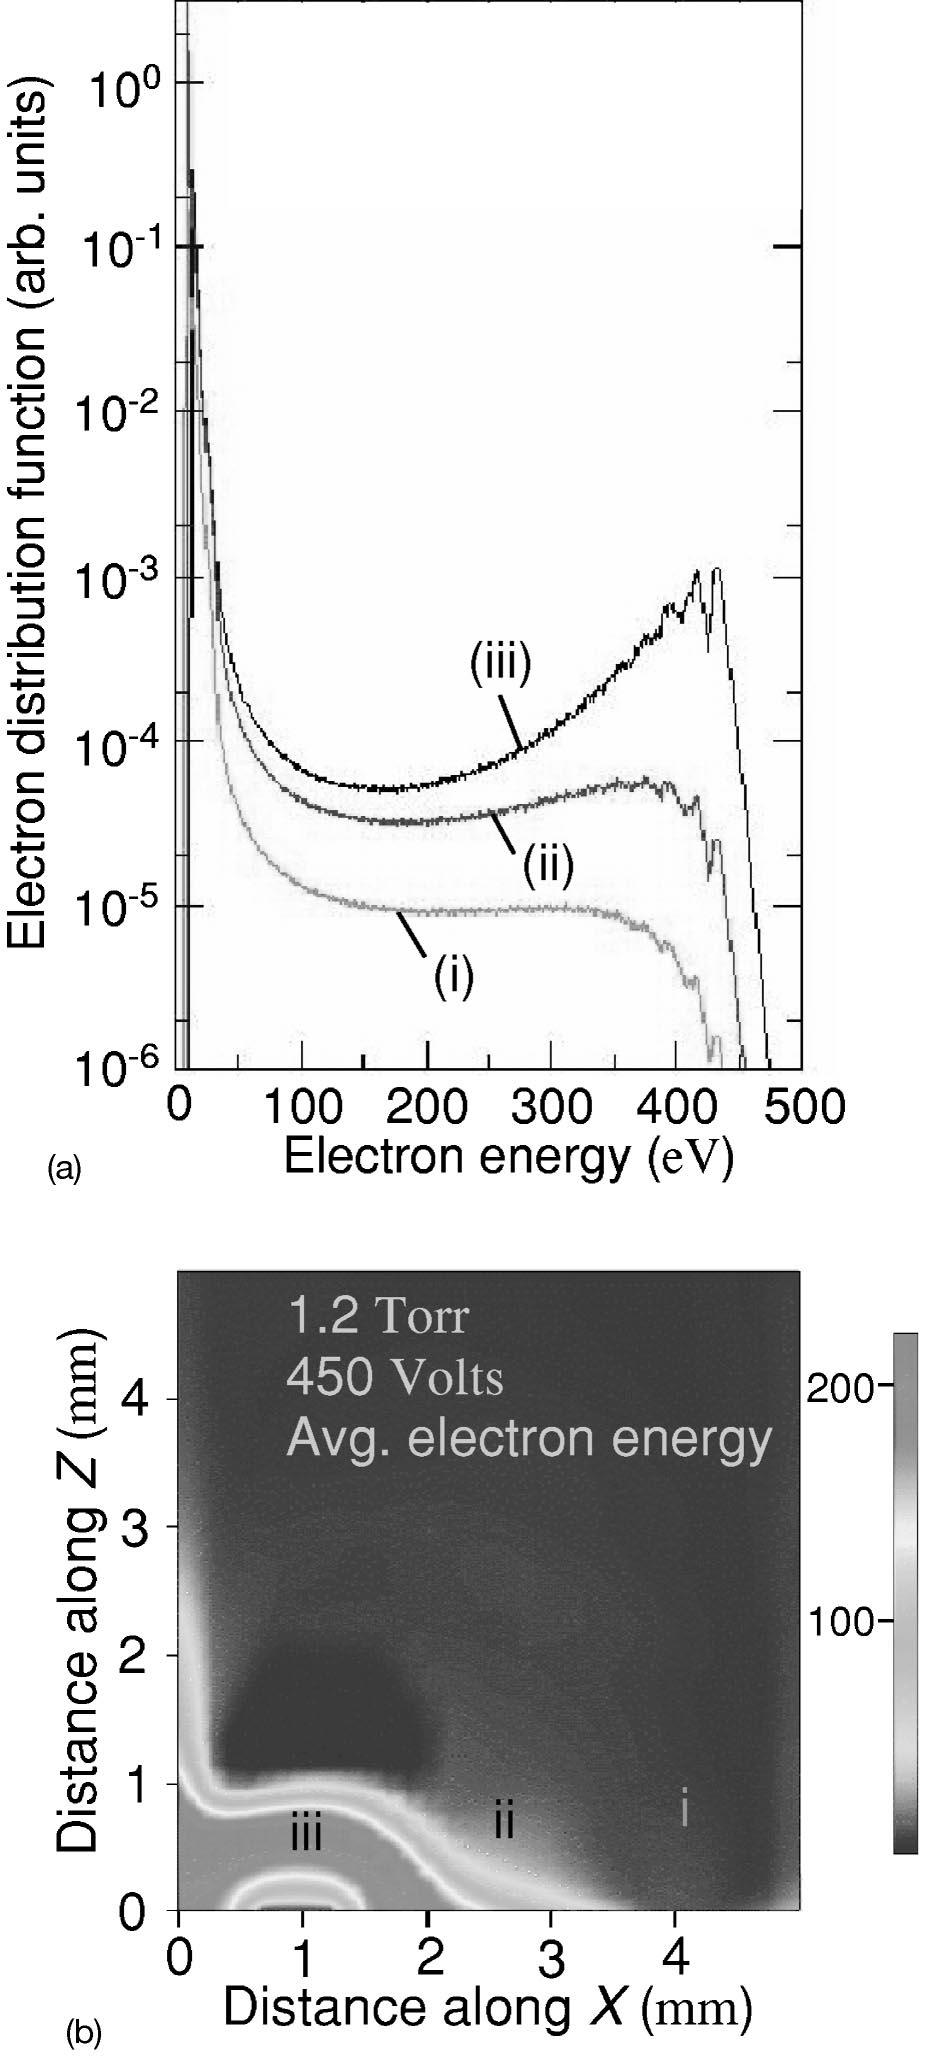 2850 J. Appl. Phys., Vol. 94, No. 5, 1 September 2003 Wilson et al. FIG. 14. Modeled electron density n/cm 3 for N 2 microplasmas at 1.2 Torr a and 6 Torr b. FIG. 13.